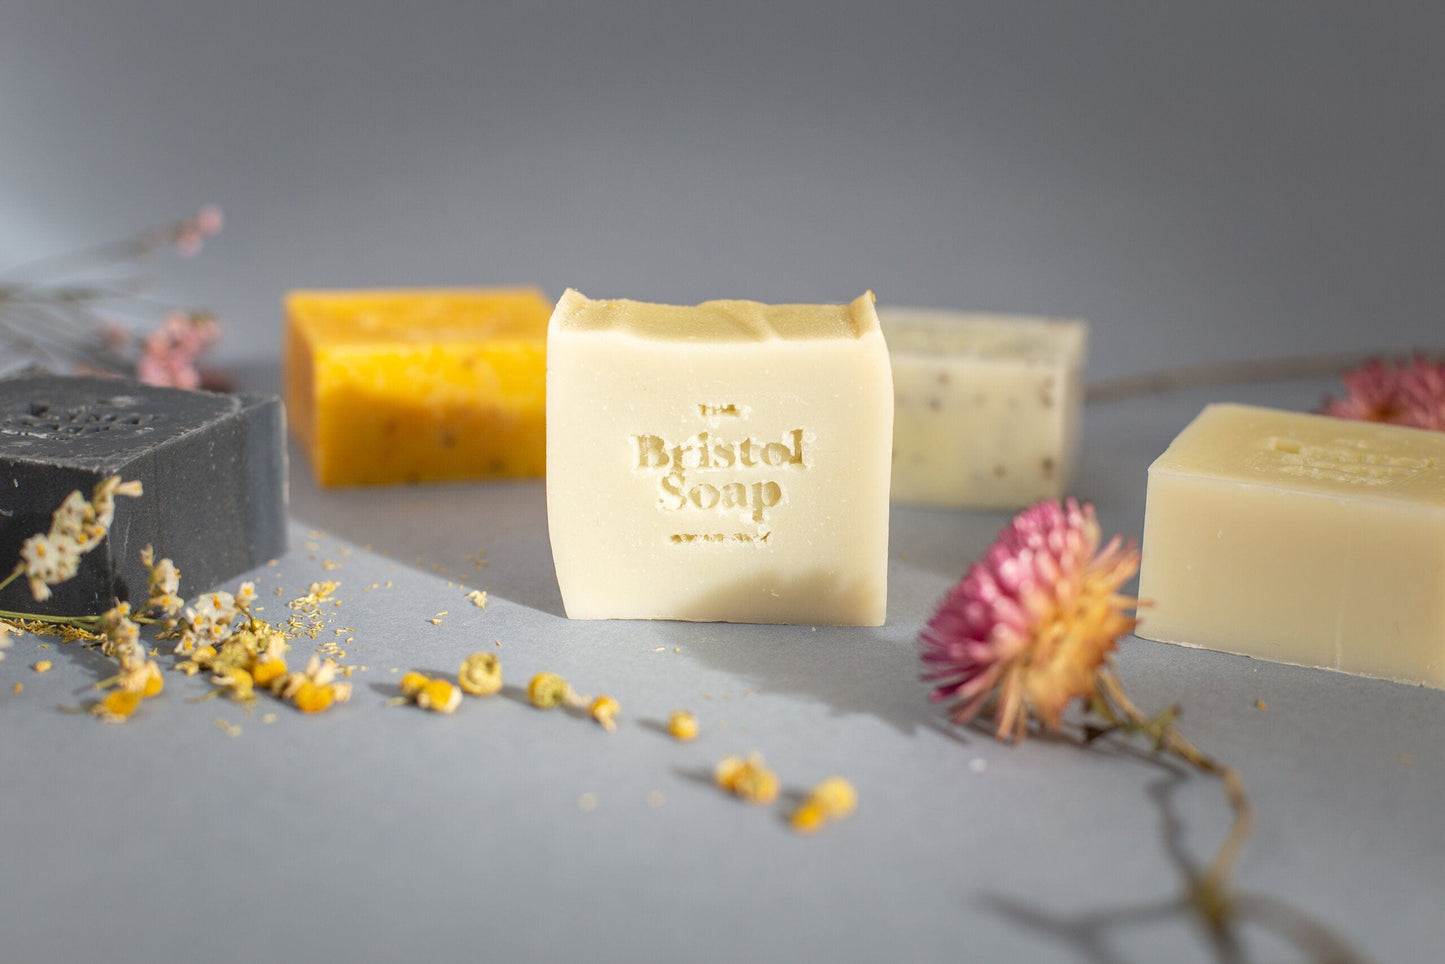 The Bristol Soap Company Soap Luxury Hand & Body Soap - Natural (sensitive skin)